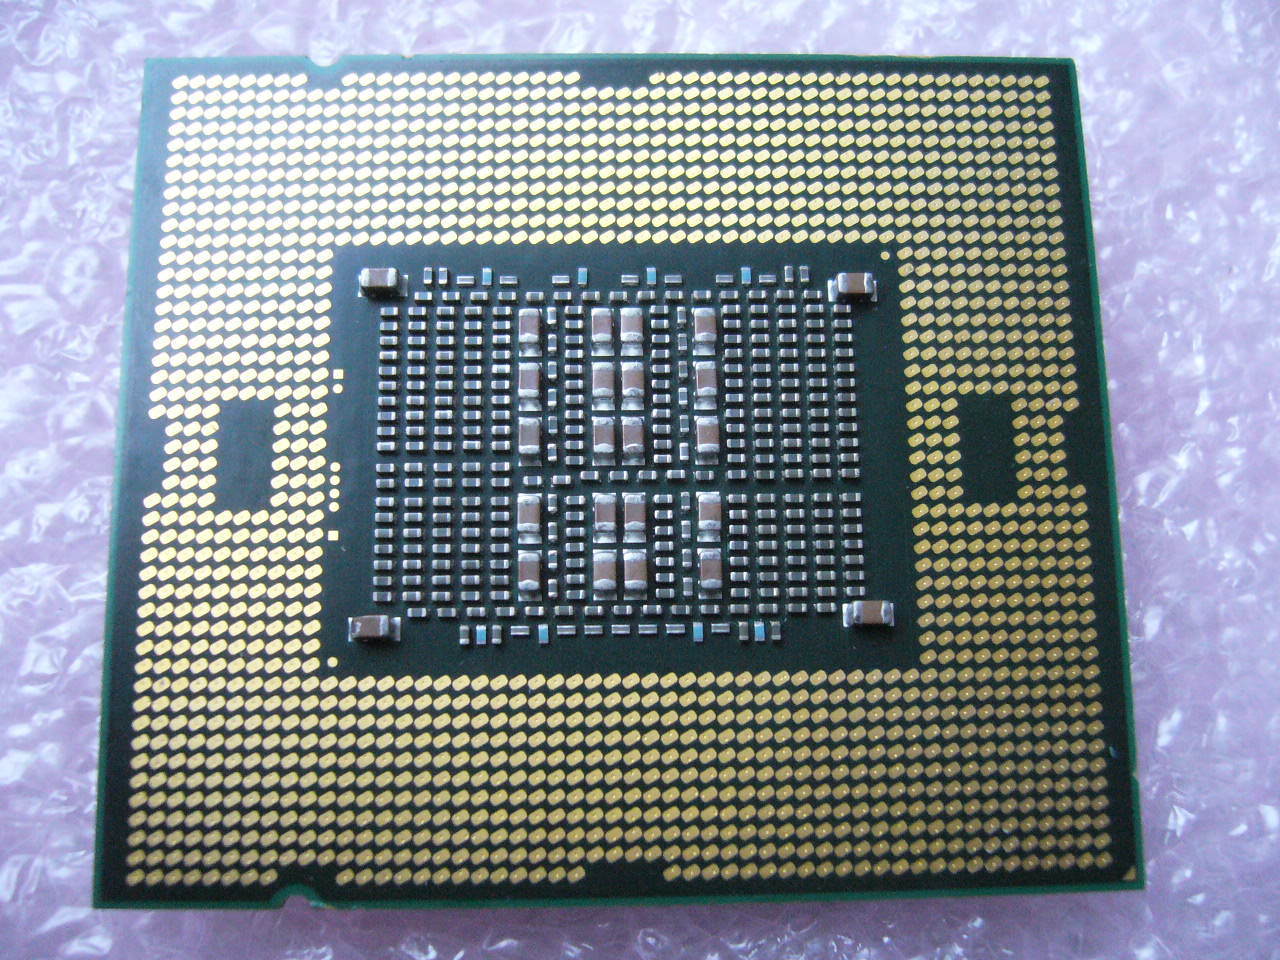 QTY 1x INTEL Ten-Core ES CPU E7-2860 2.26GHZ/24MB LGA1567 for HP/Dell/IBM server - Click Image to Close